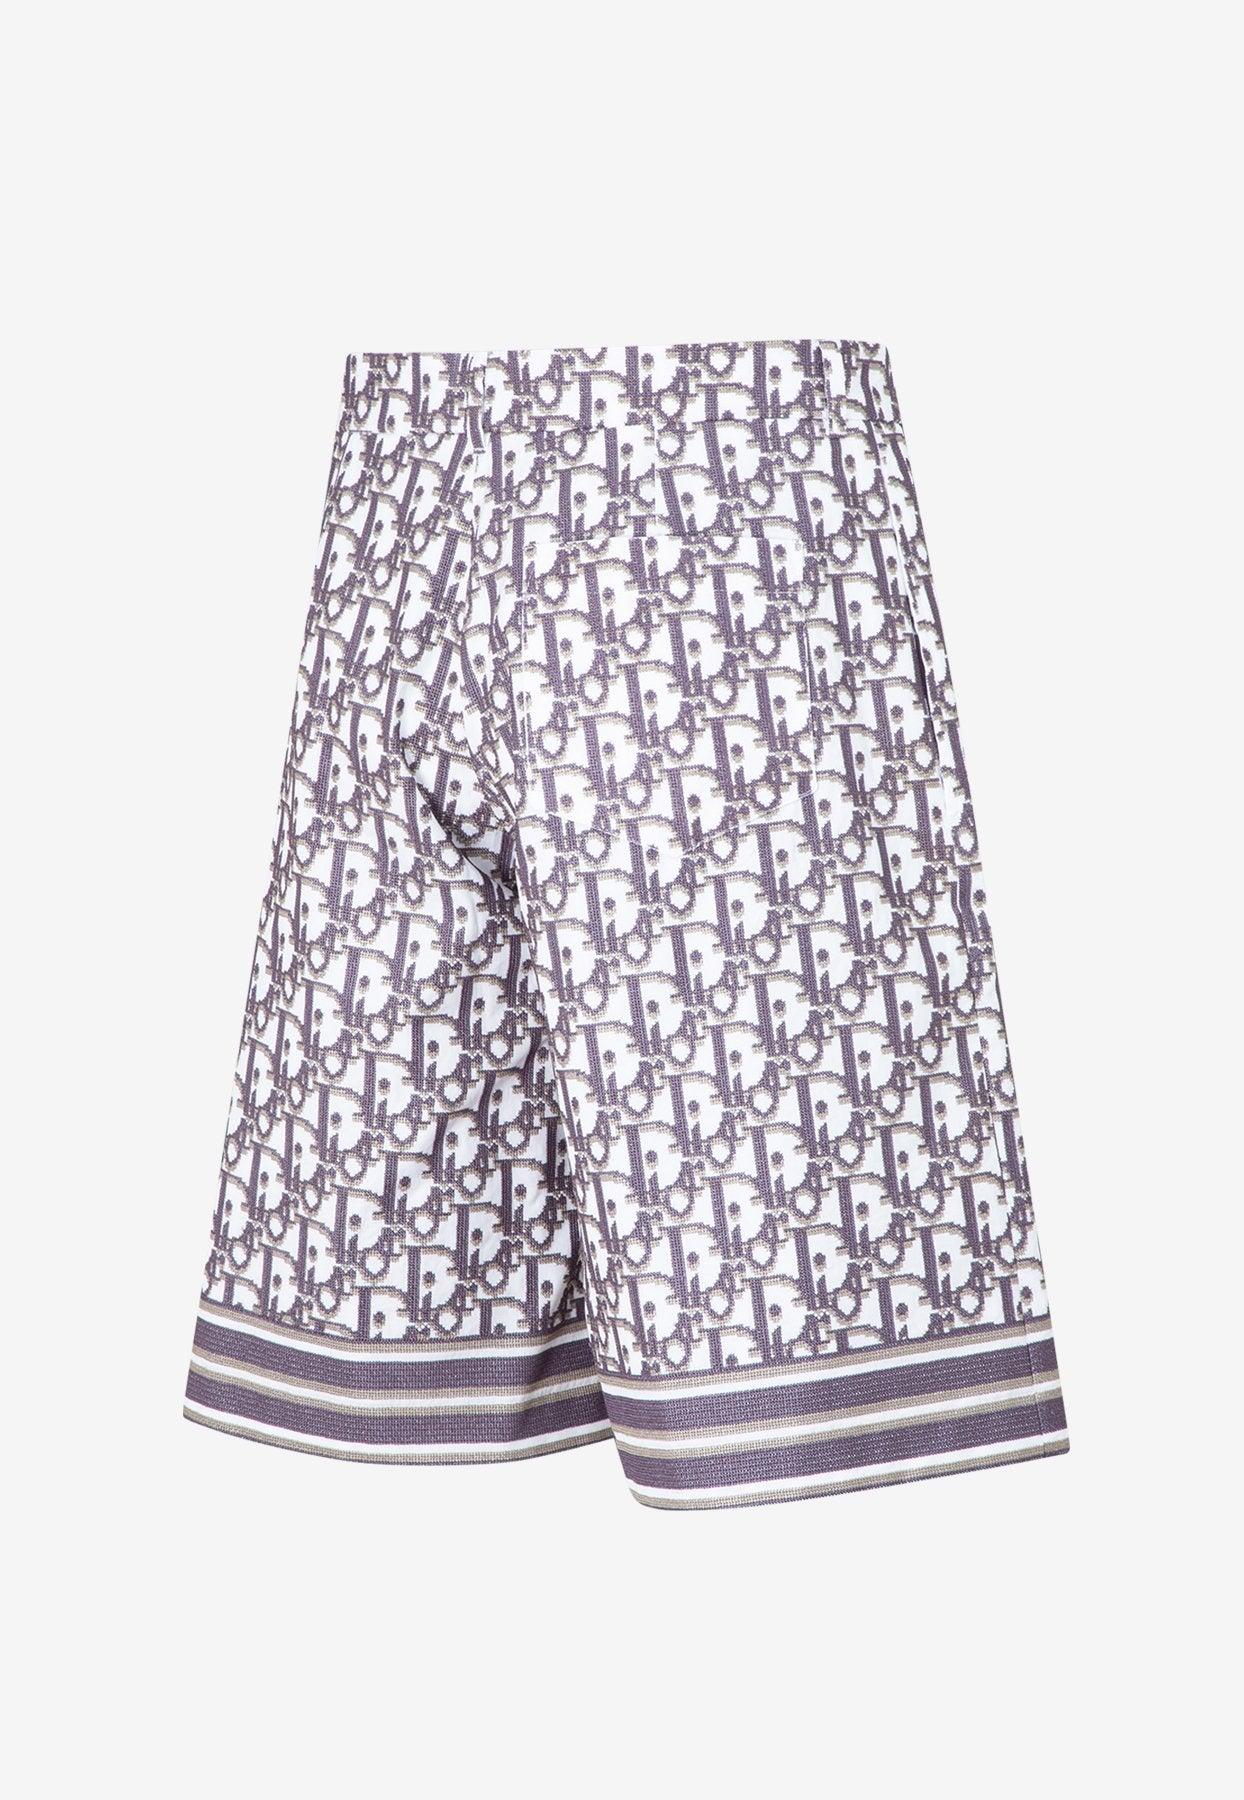 Dior Men's Shorts 